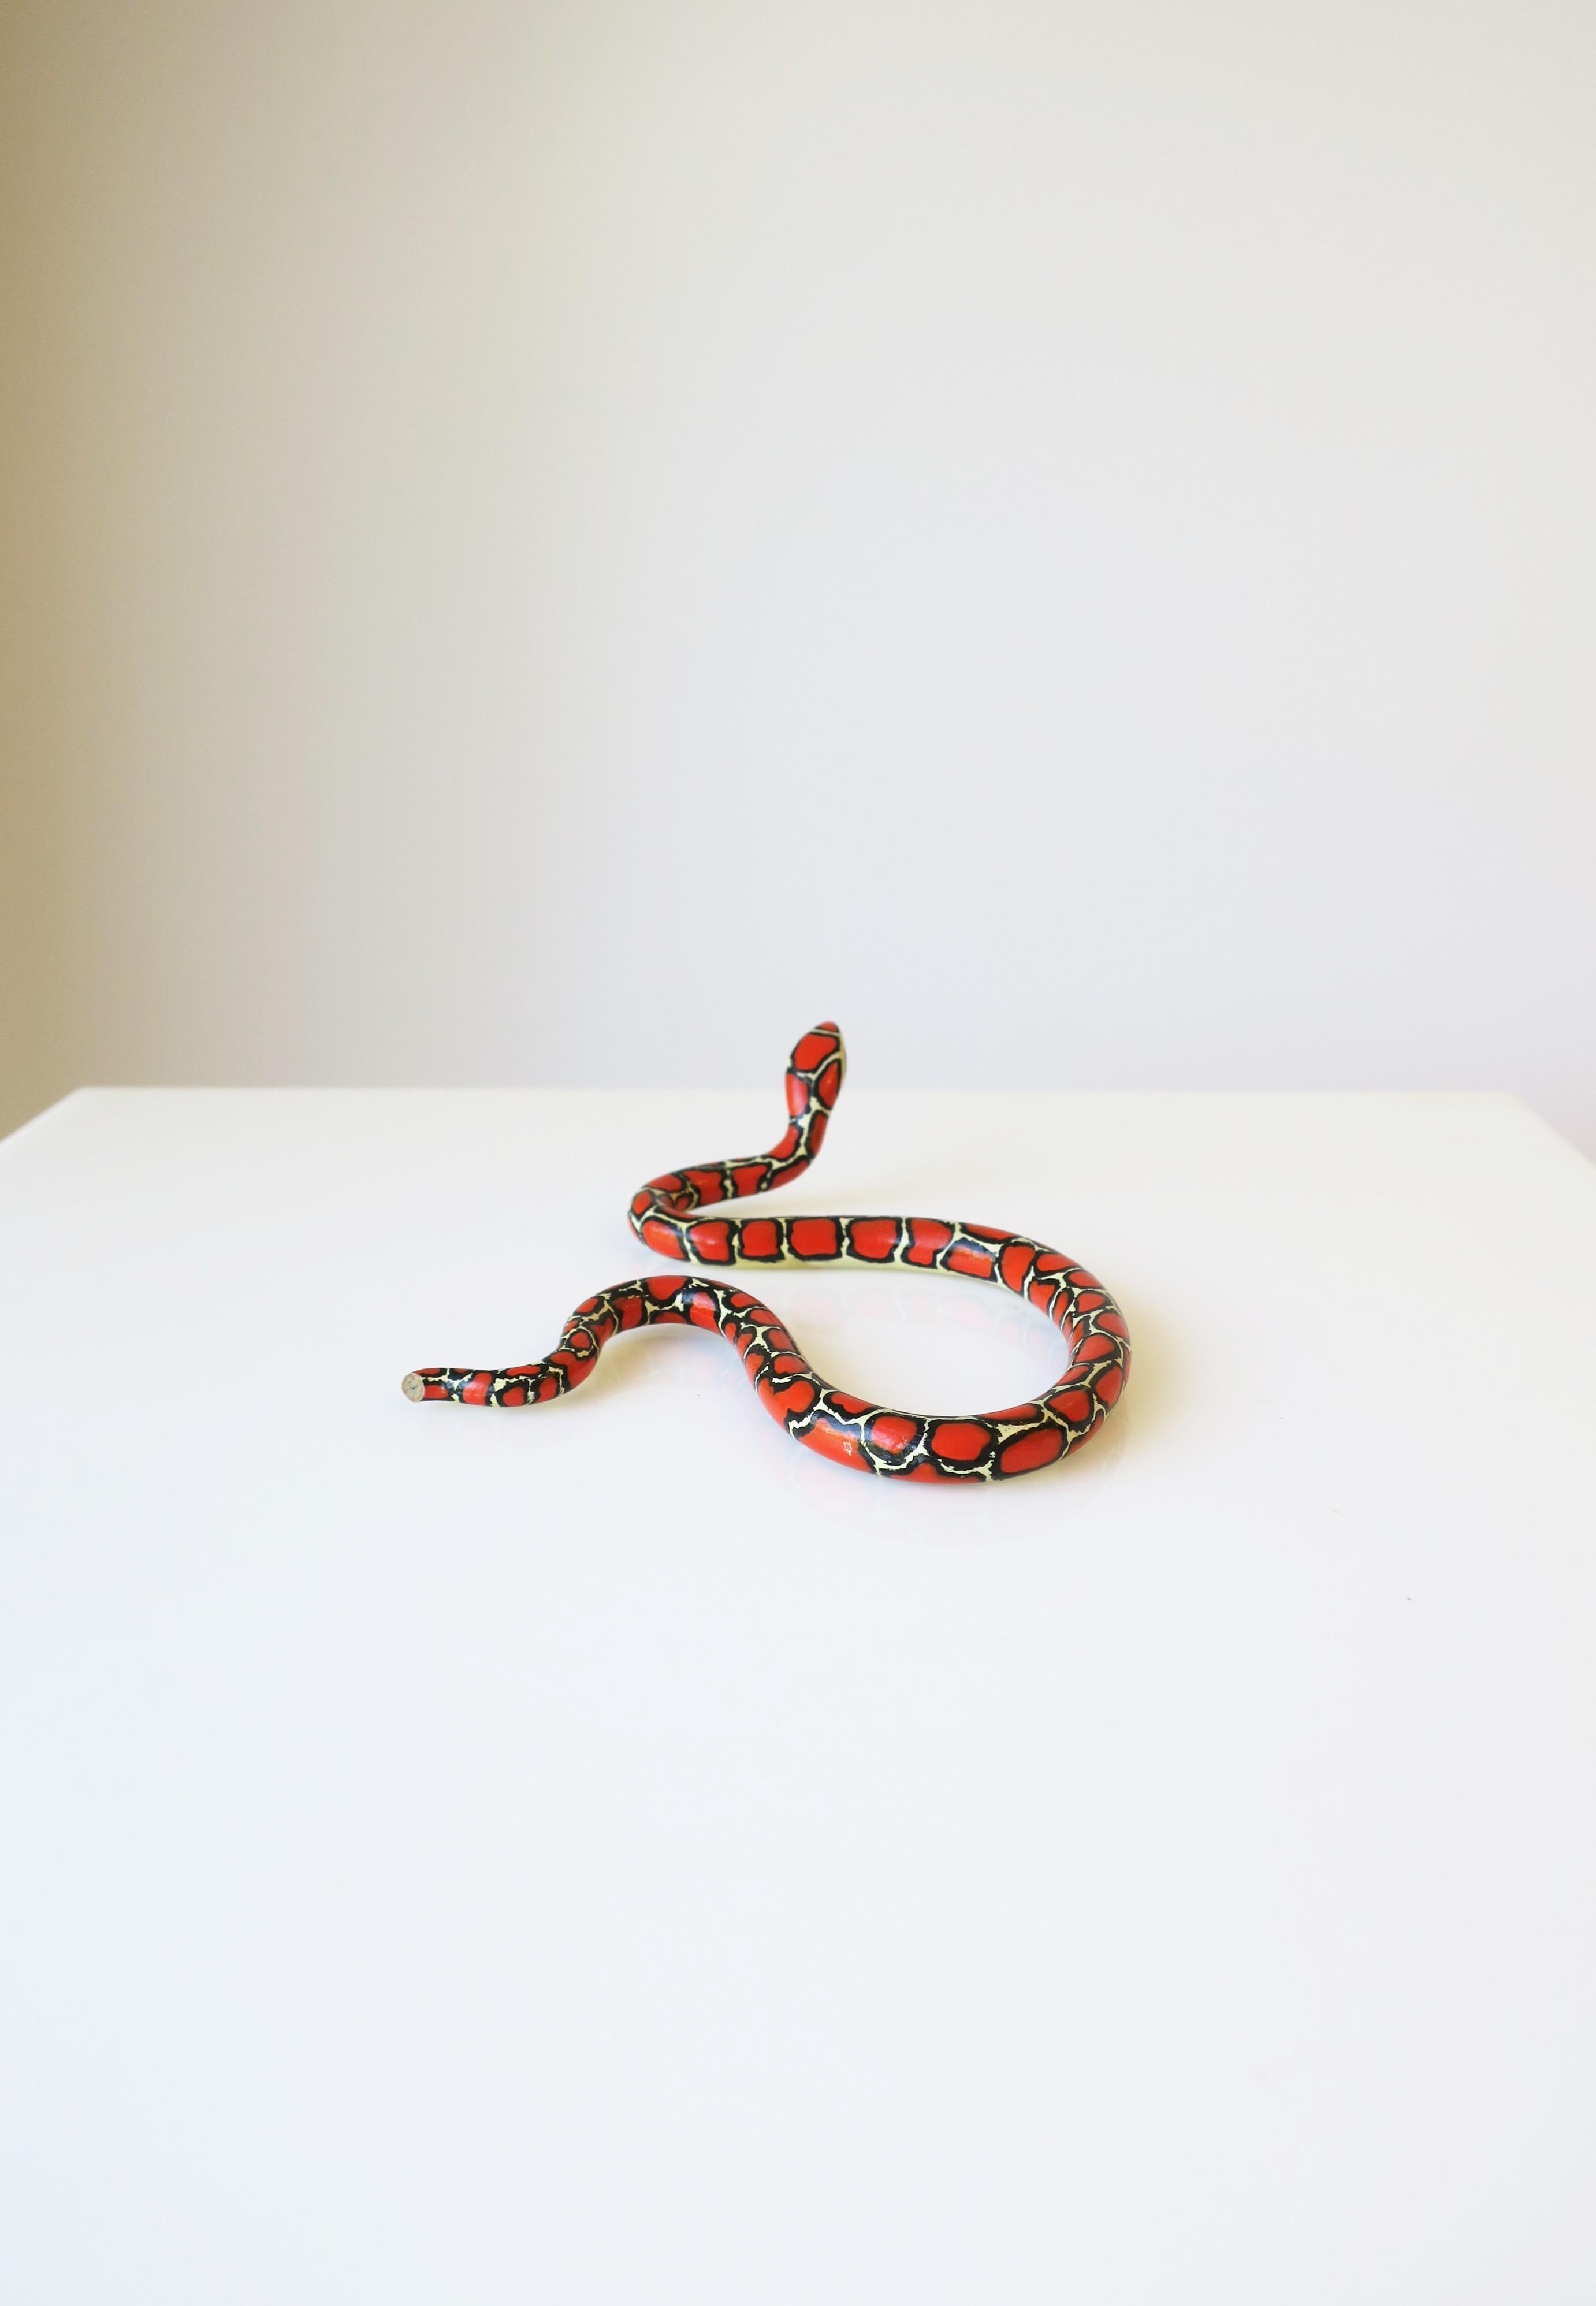 Red Black and White Terracotta Ceramic Snake 8